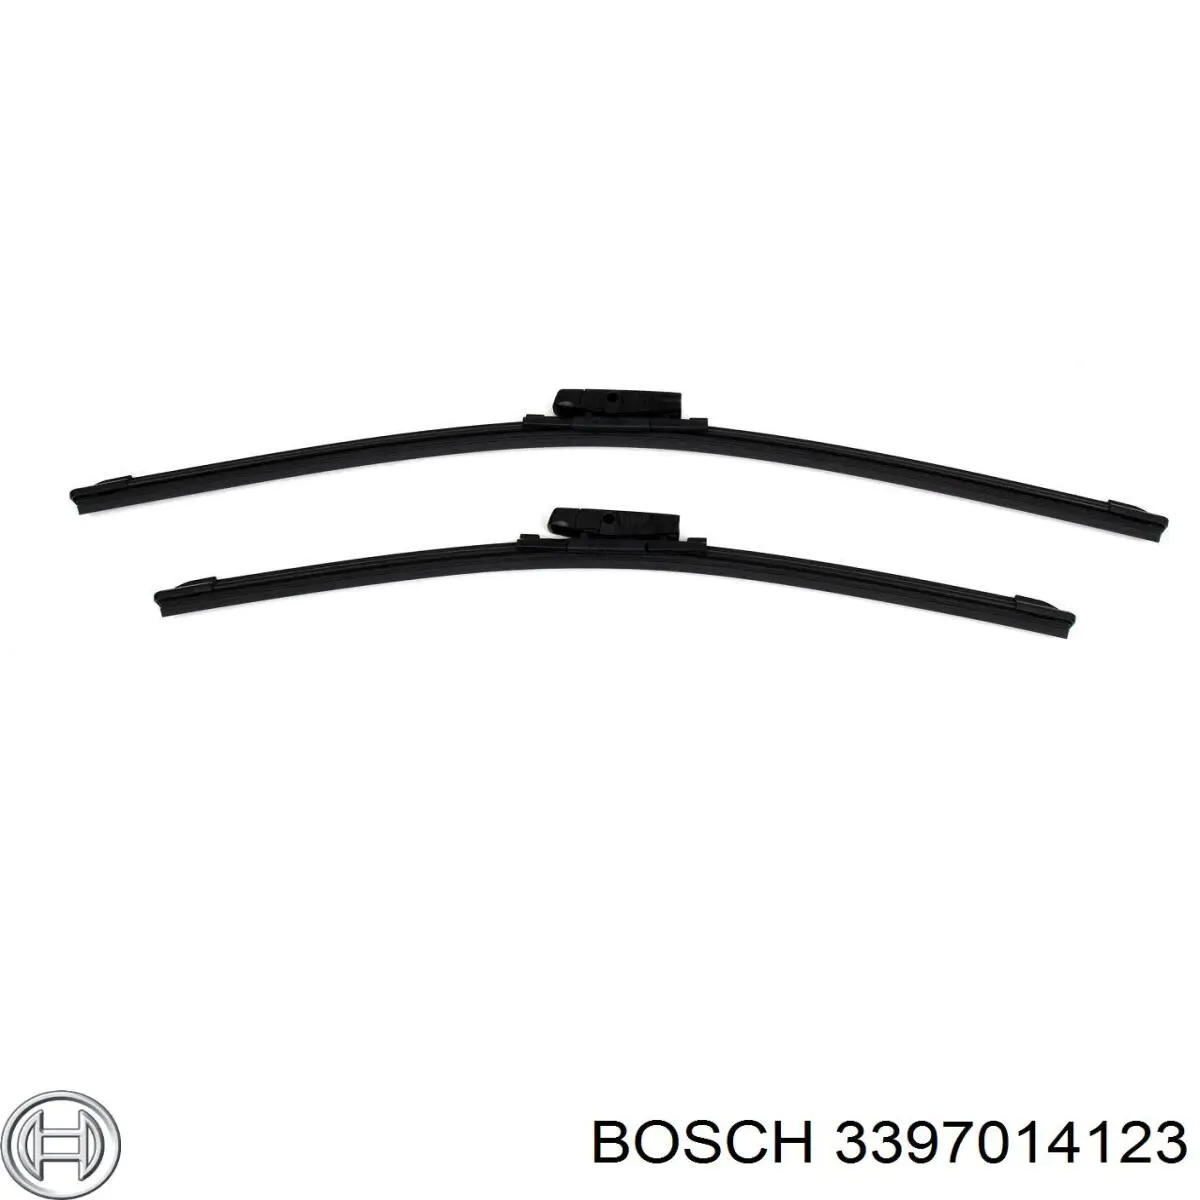 3397014123 Bosch limpiaparabrisas